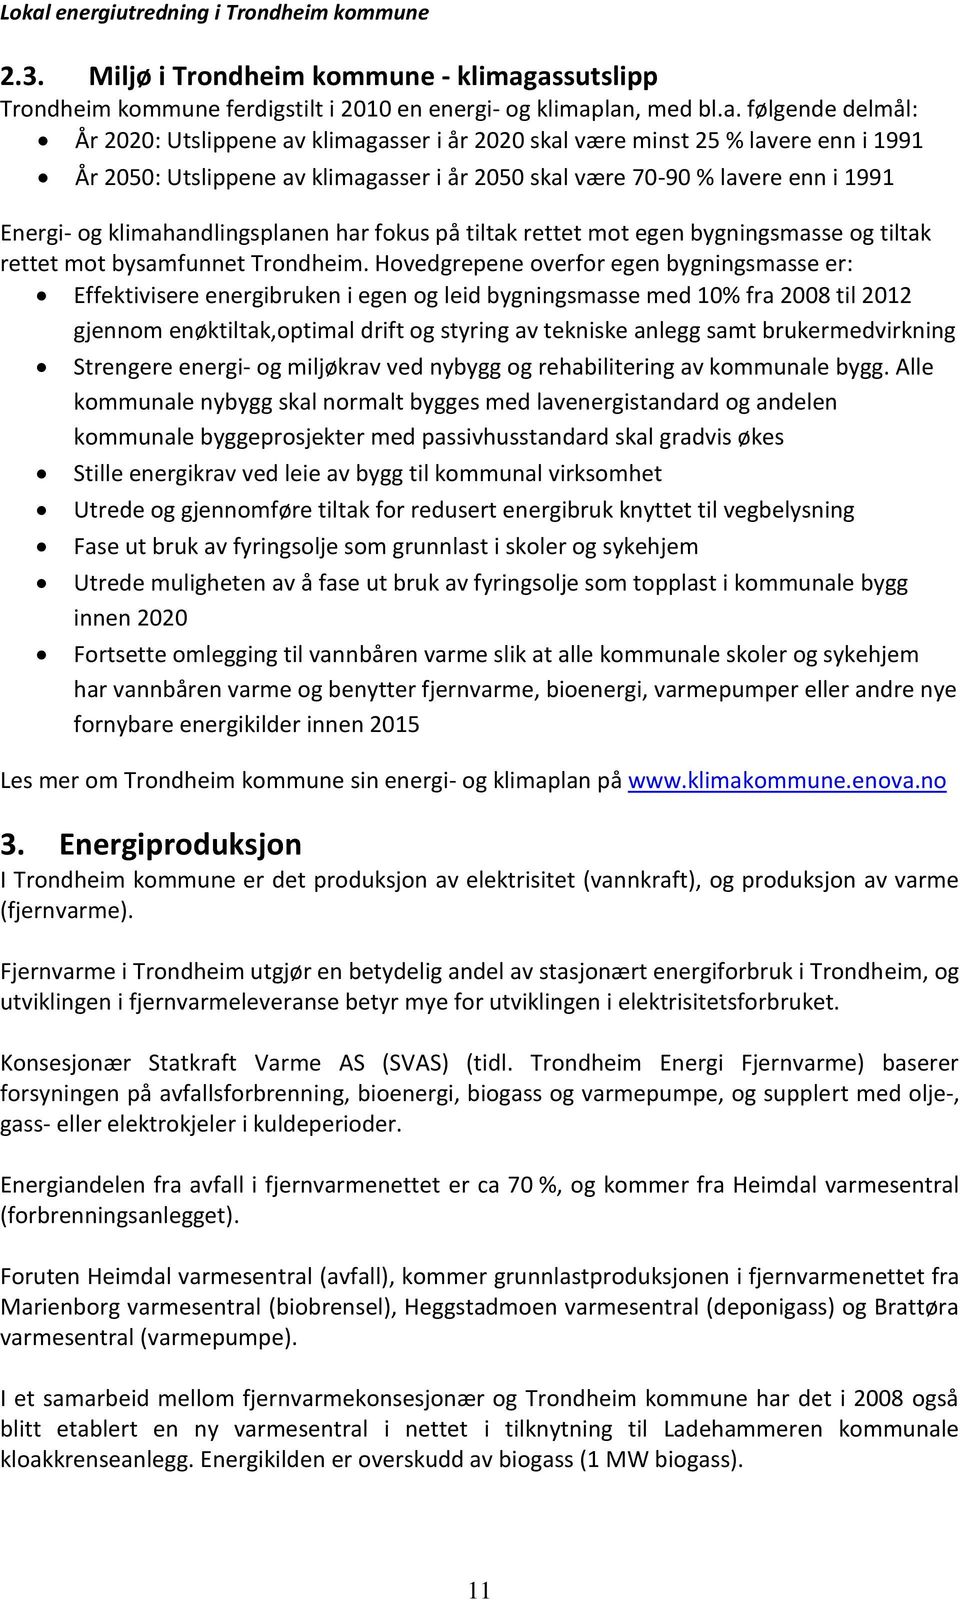 Utslippene av klimagasser i år 2050 skal være 70-90 % lavere enn i 1991 Energi- og klimahandlingsplanen har fokus på tiltak rettet mot egen bygningsmasse og tiltak rettet mot bysamfunnet Trondheim.